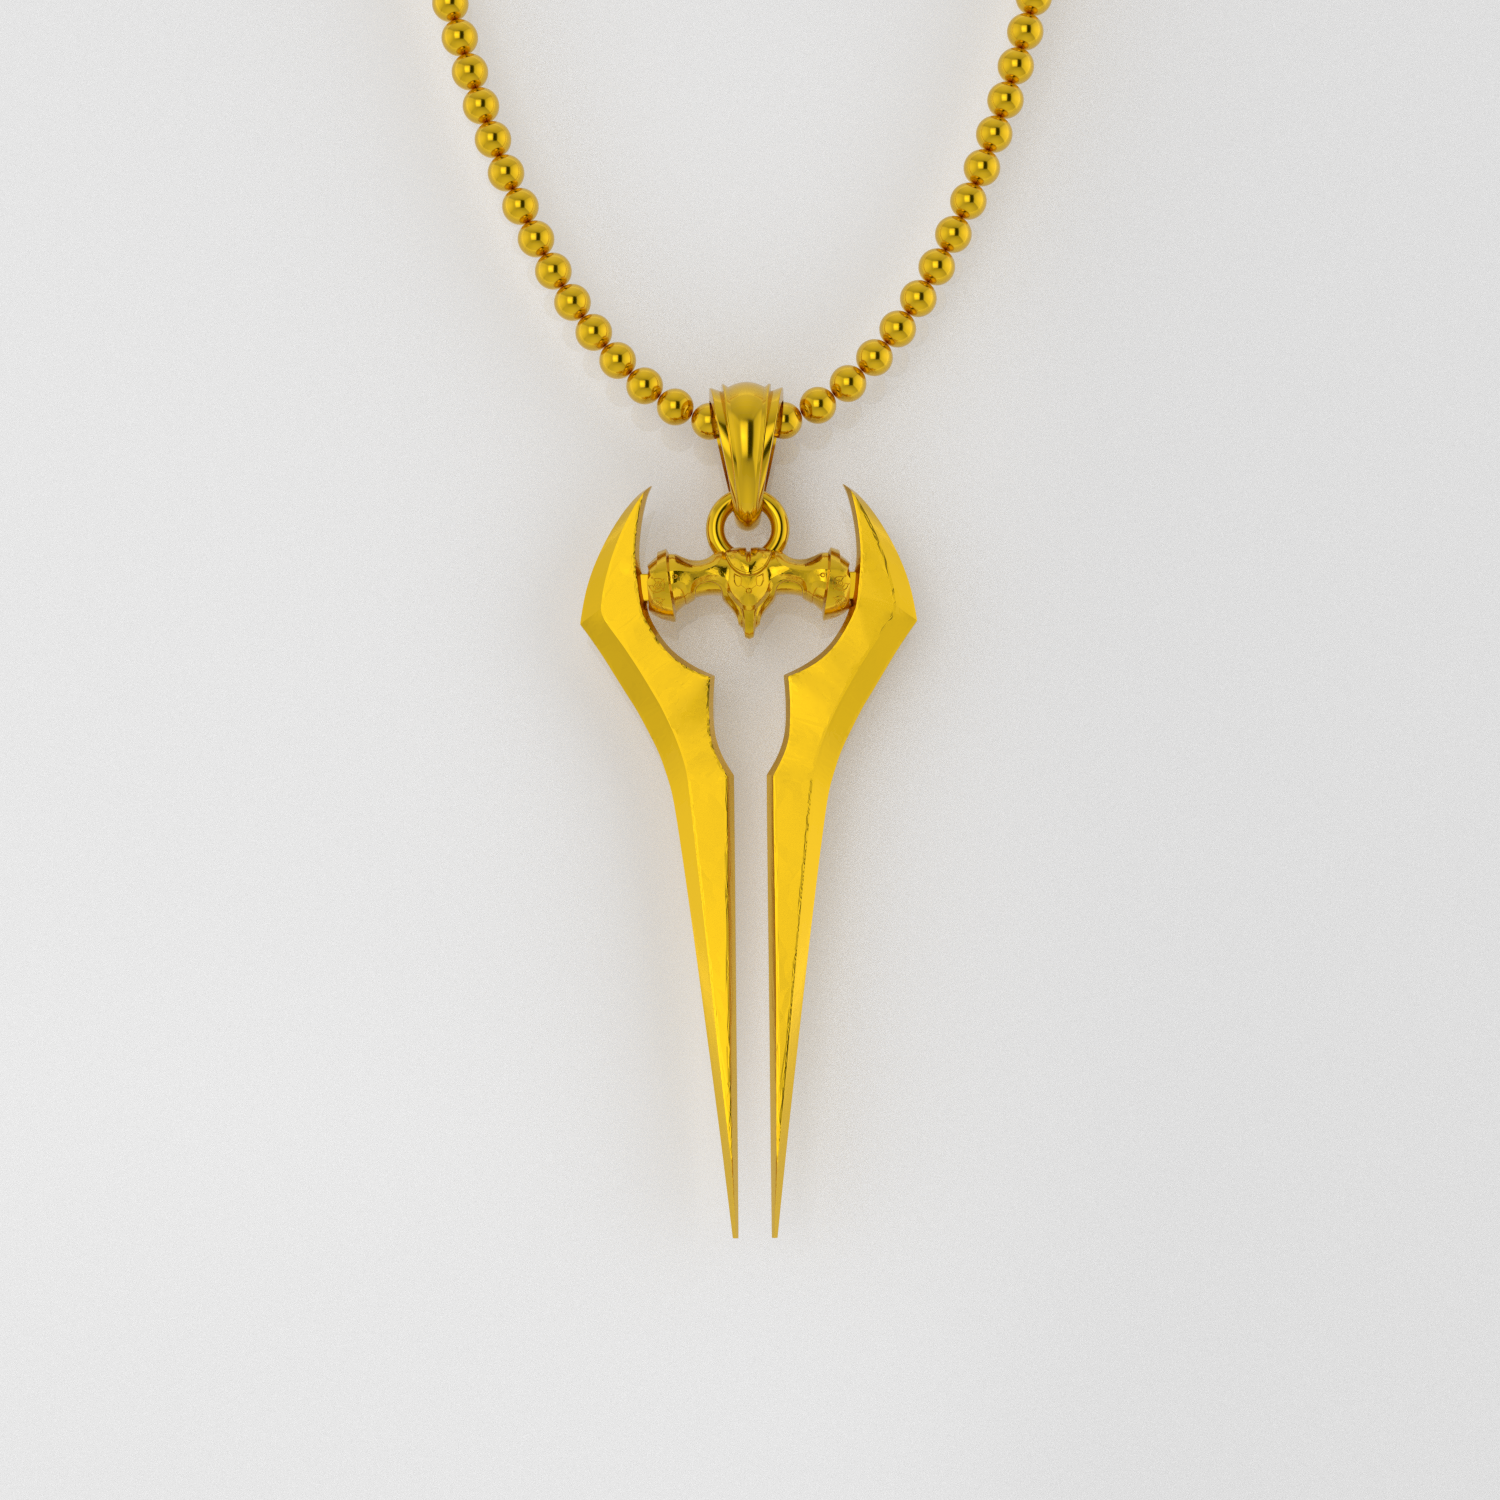 Crystal Sword Necklace - Bronze Jewel